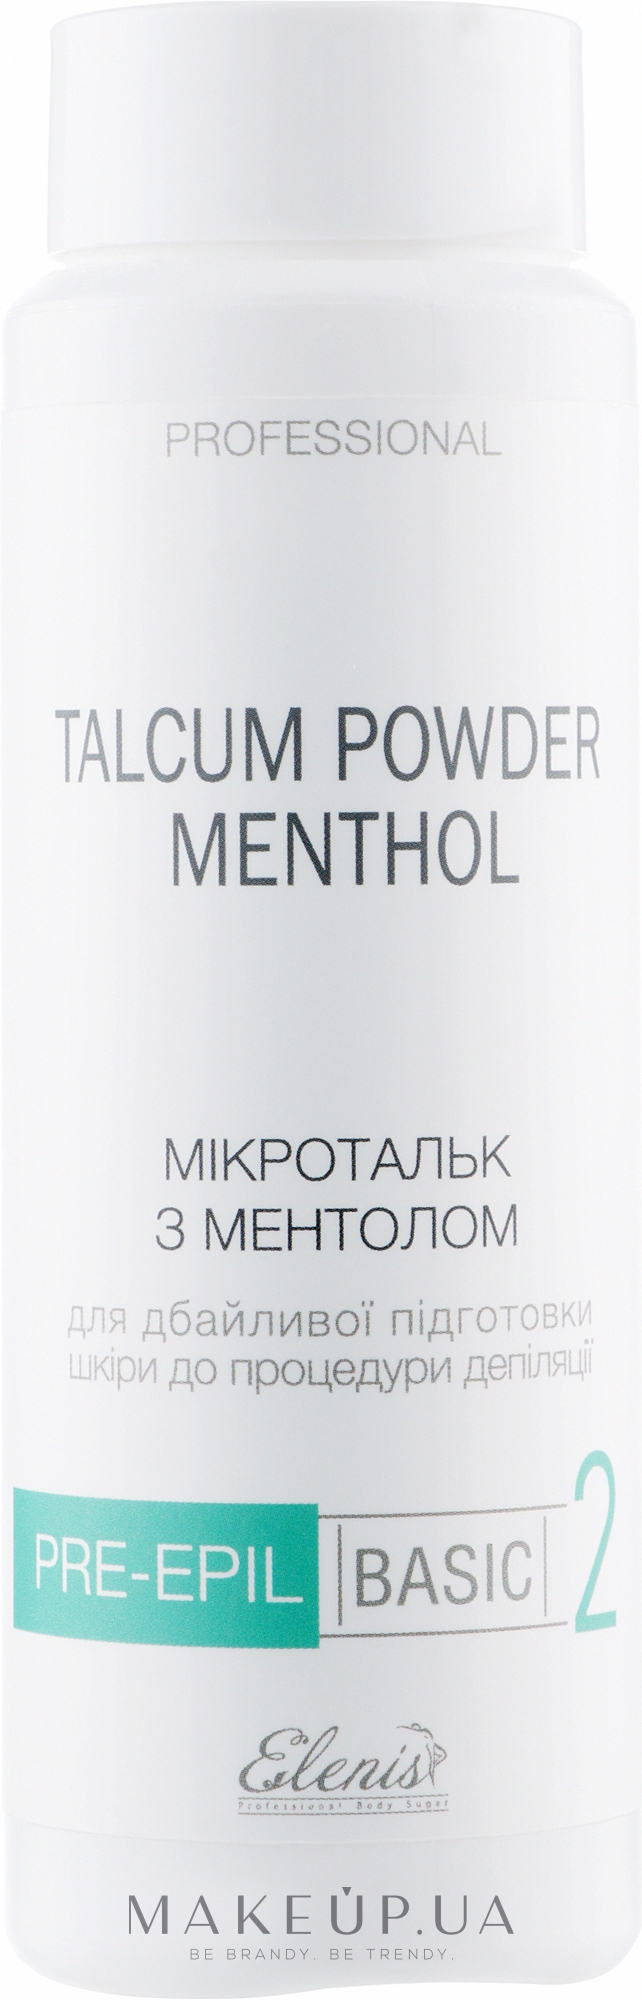 Микротальк с ментолом для тела - Elenis Pre-Epil Talcum Powder Menthol — фото 150g